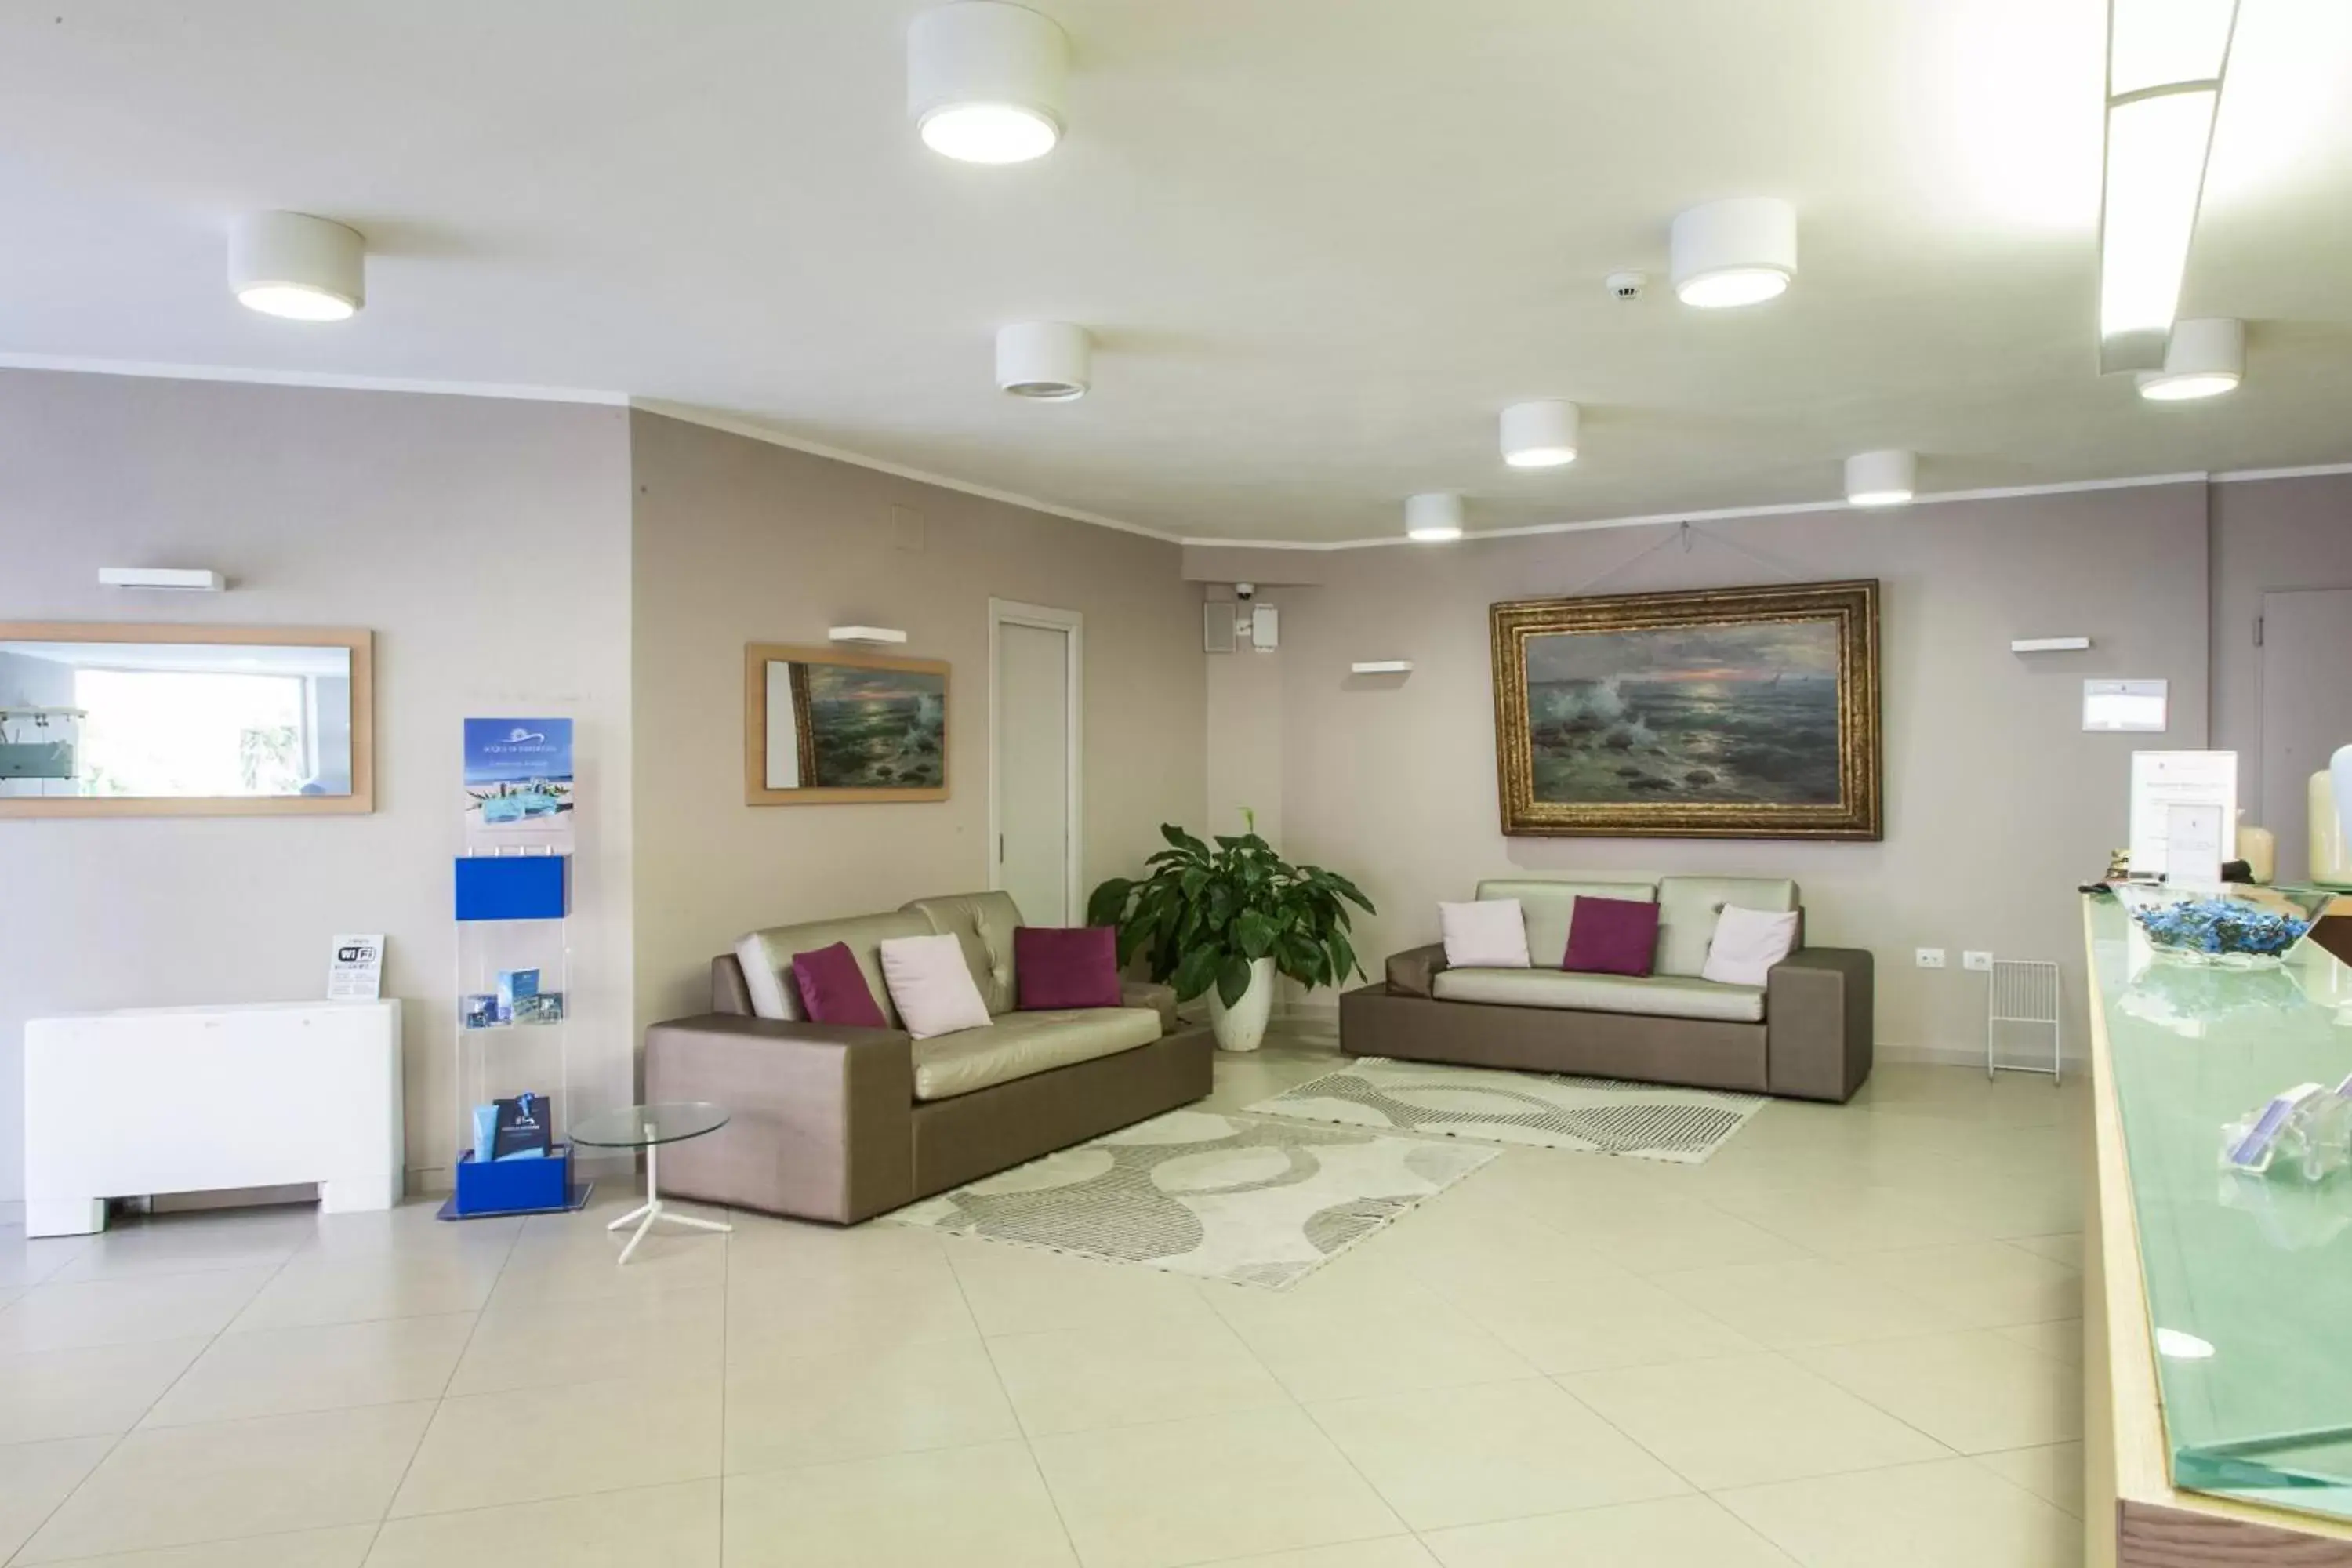 Lobby or reception, Lobby/Reception in Alma di Alghero Hotel